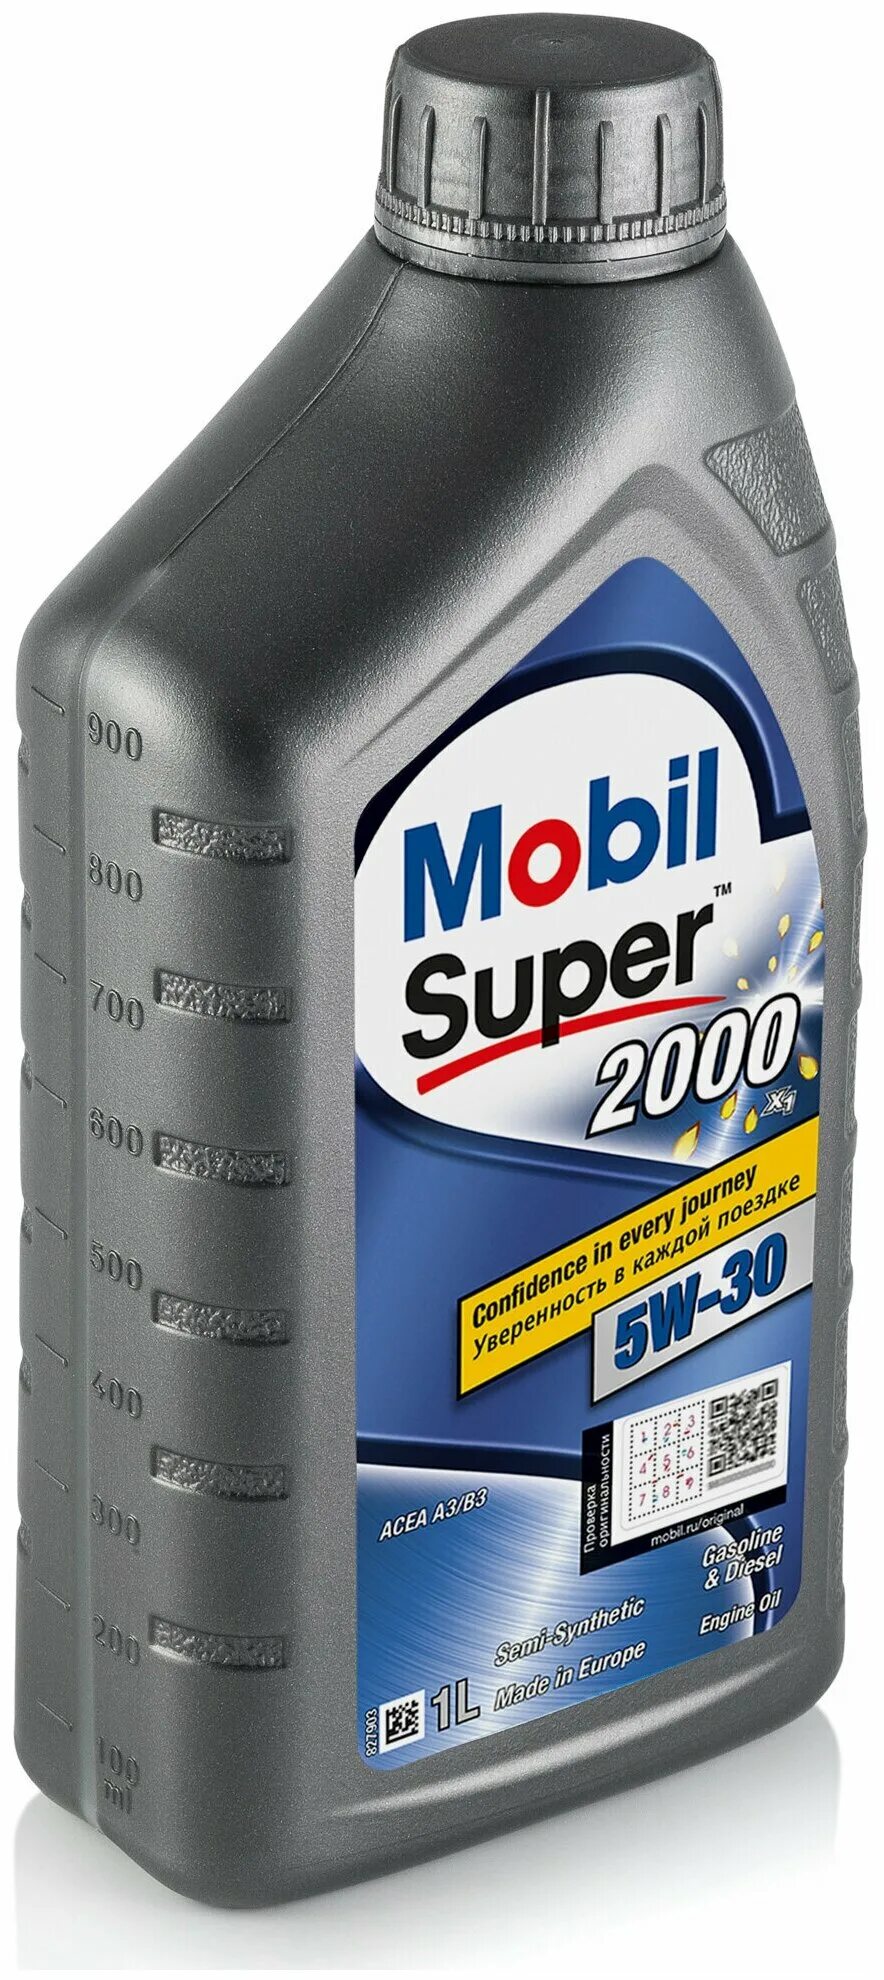 Купить моторное масло мобил 3000